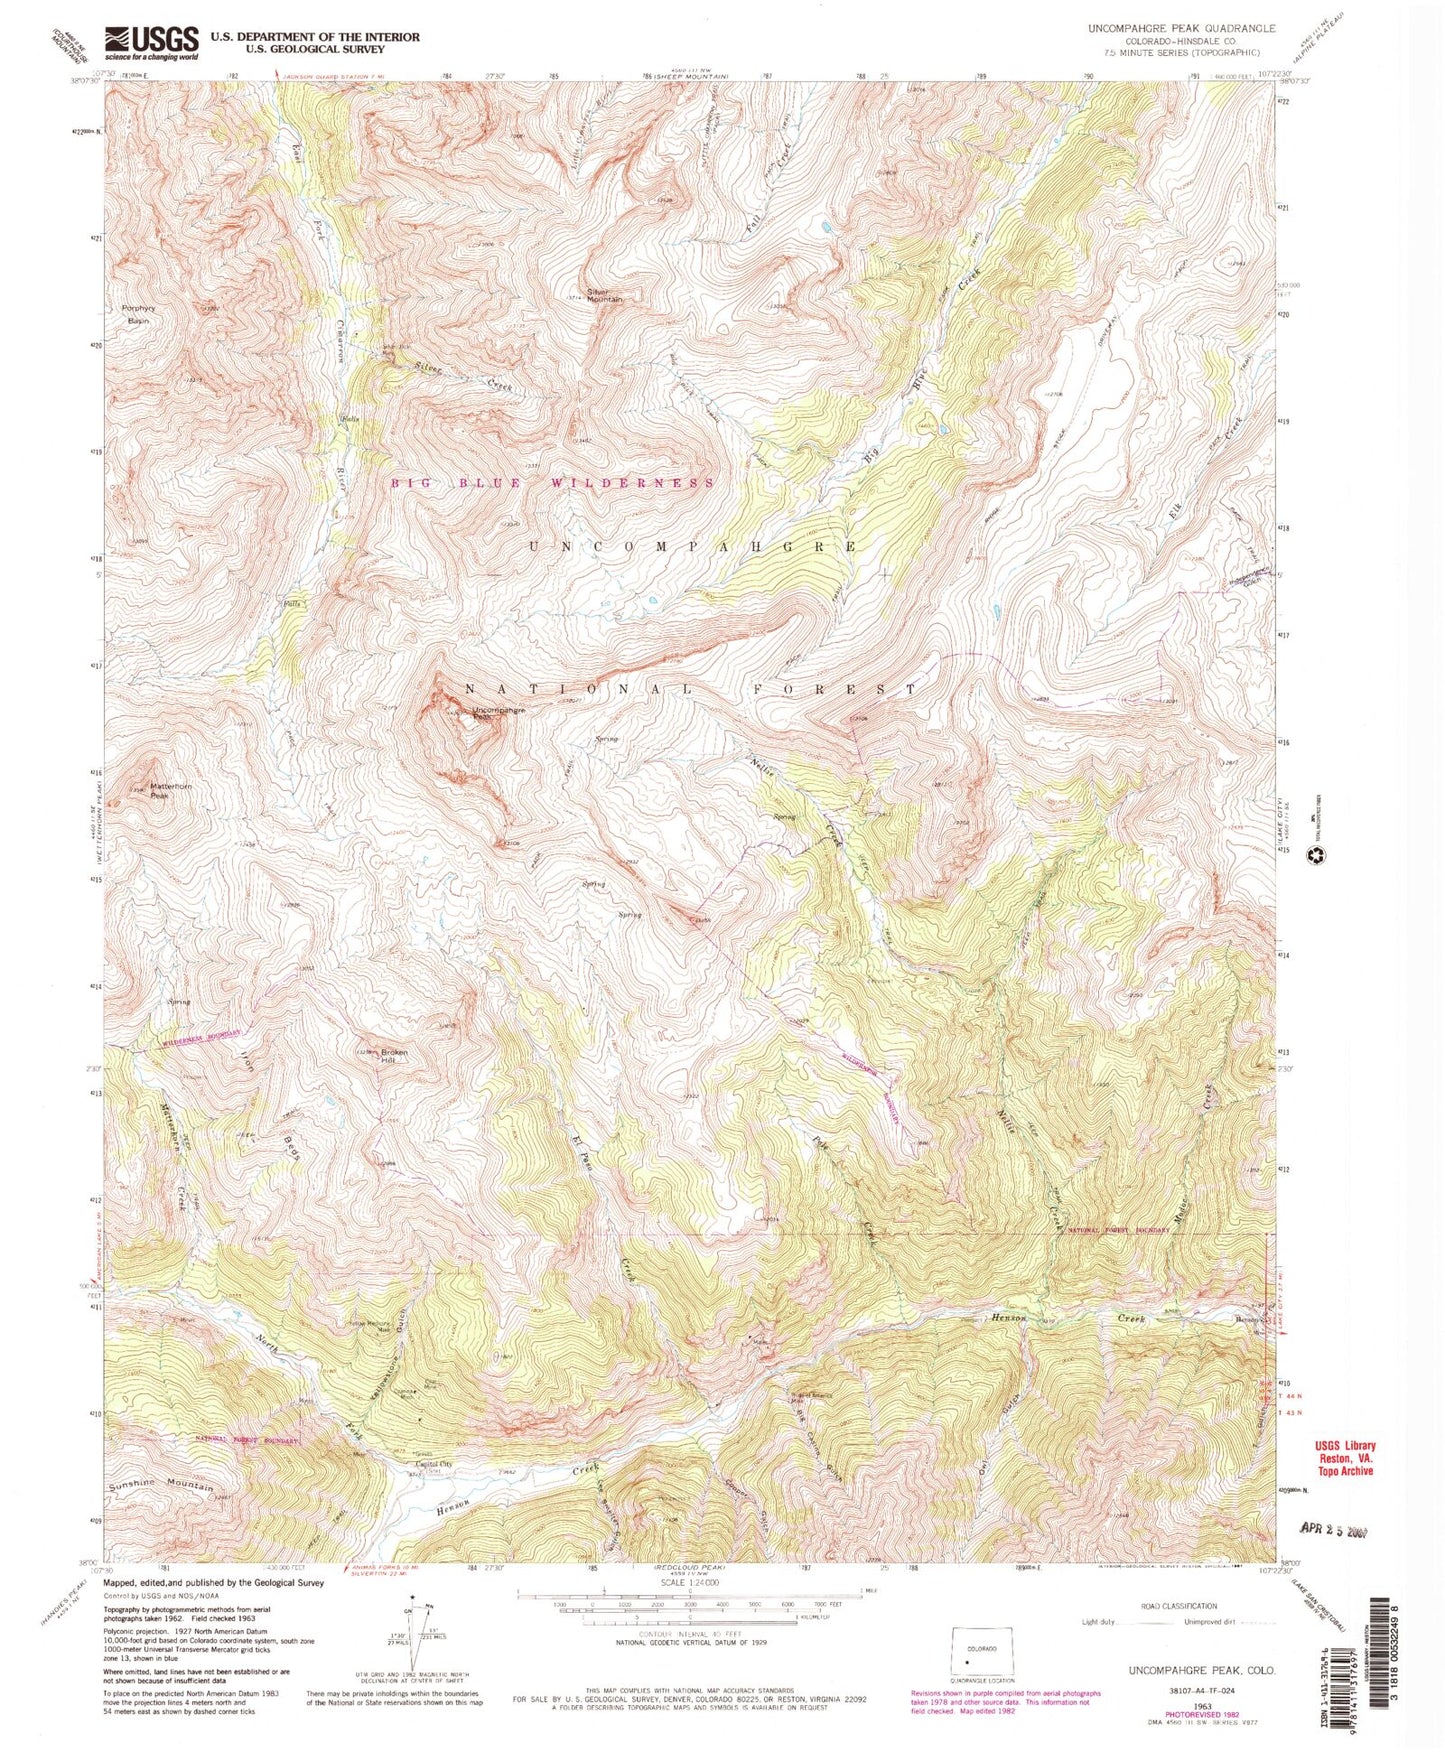 USGS Classic Uncompahgre Peak Colorado 7.5'x7.5' Topo Map Image